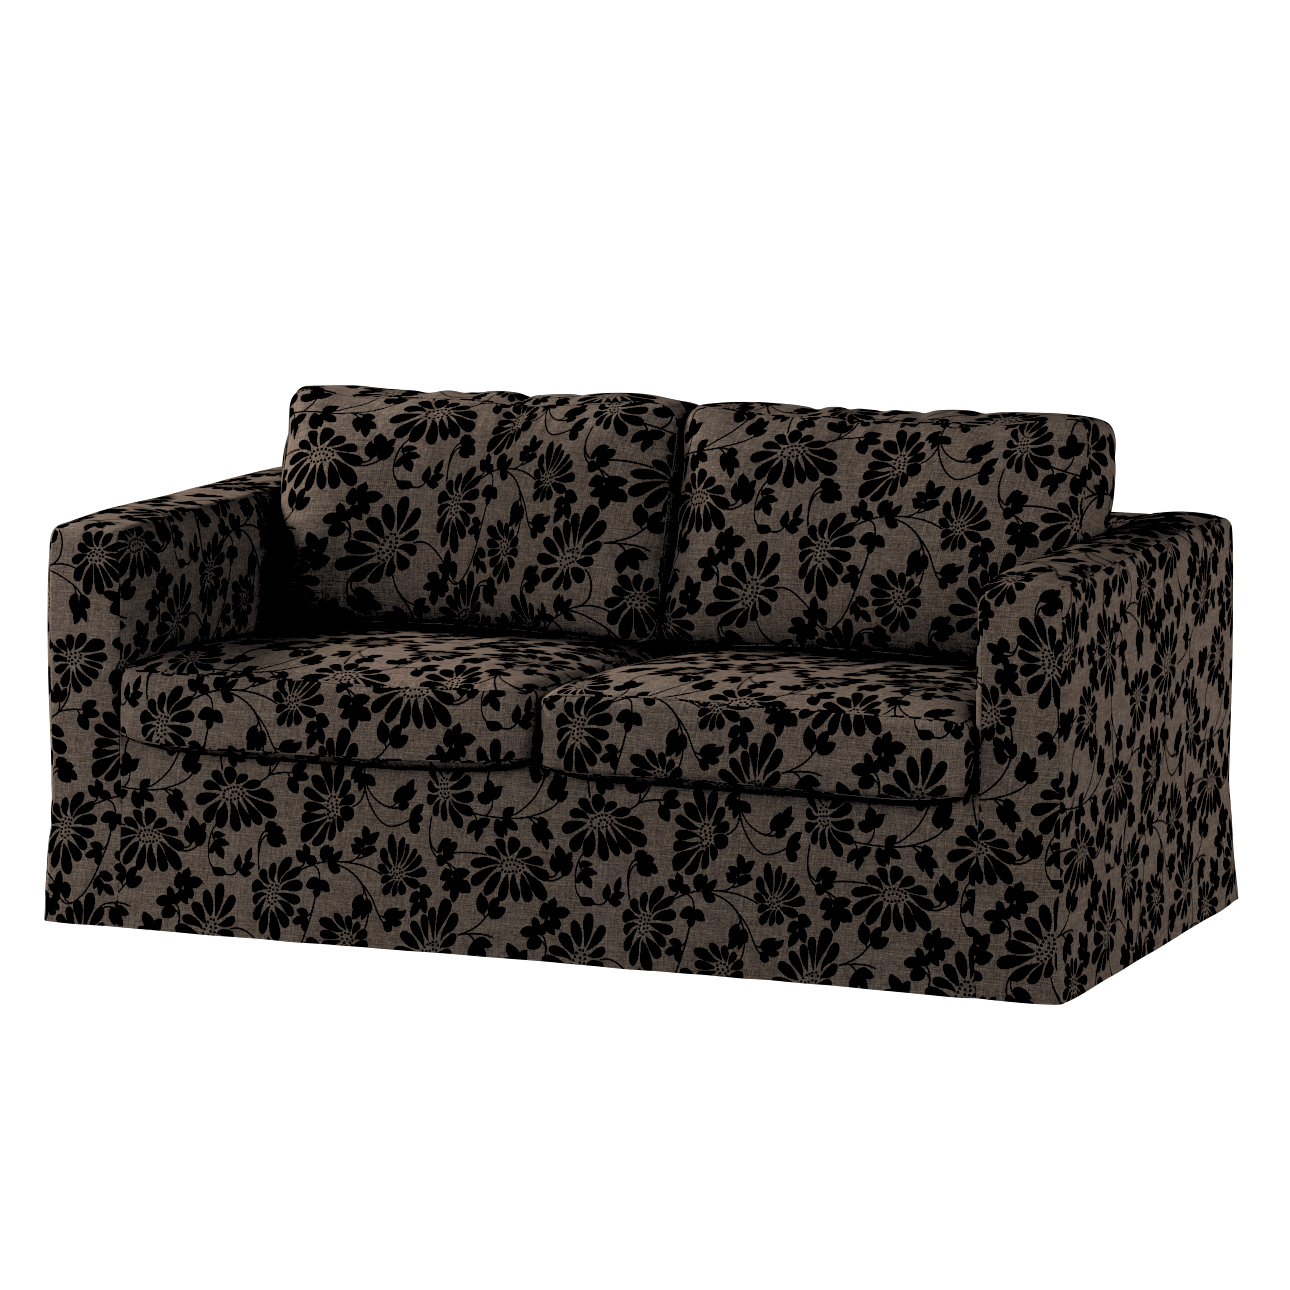 Bezug für Karlstad 2-Sitzer Sofa nicht ausklappbar, lang, braun-schwarz, So günstig online kaufen